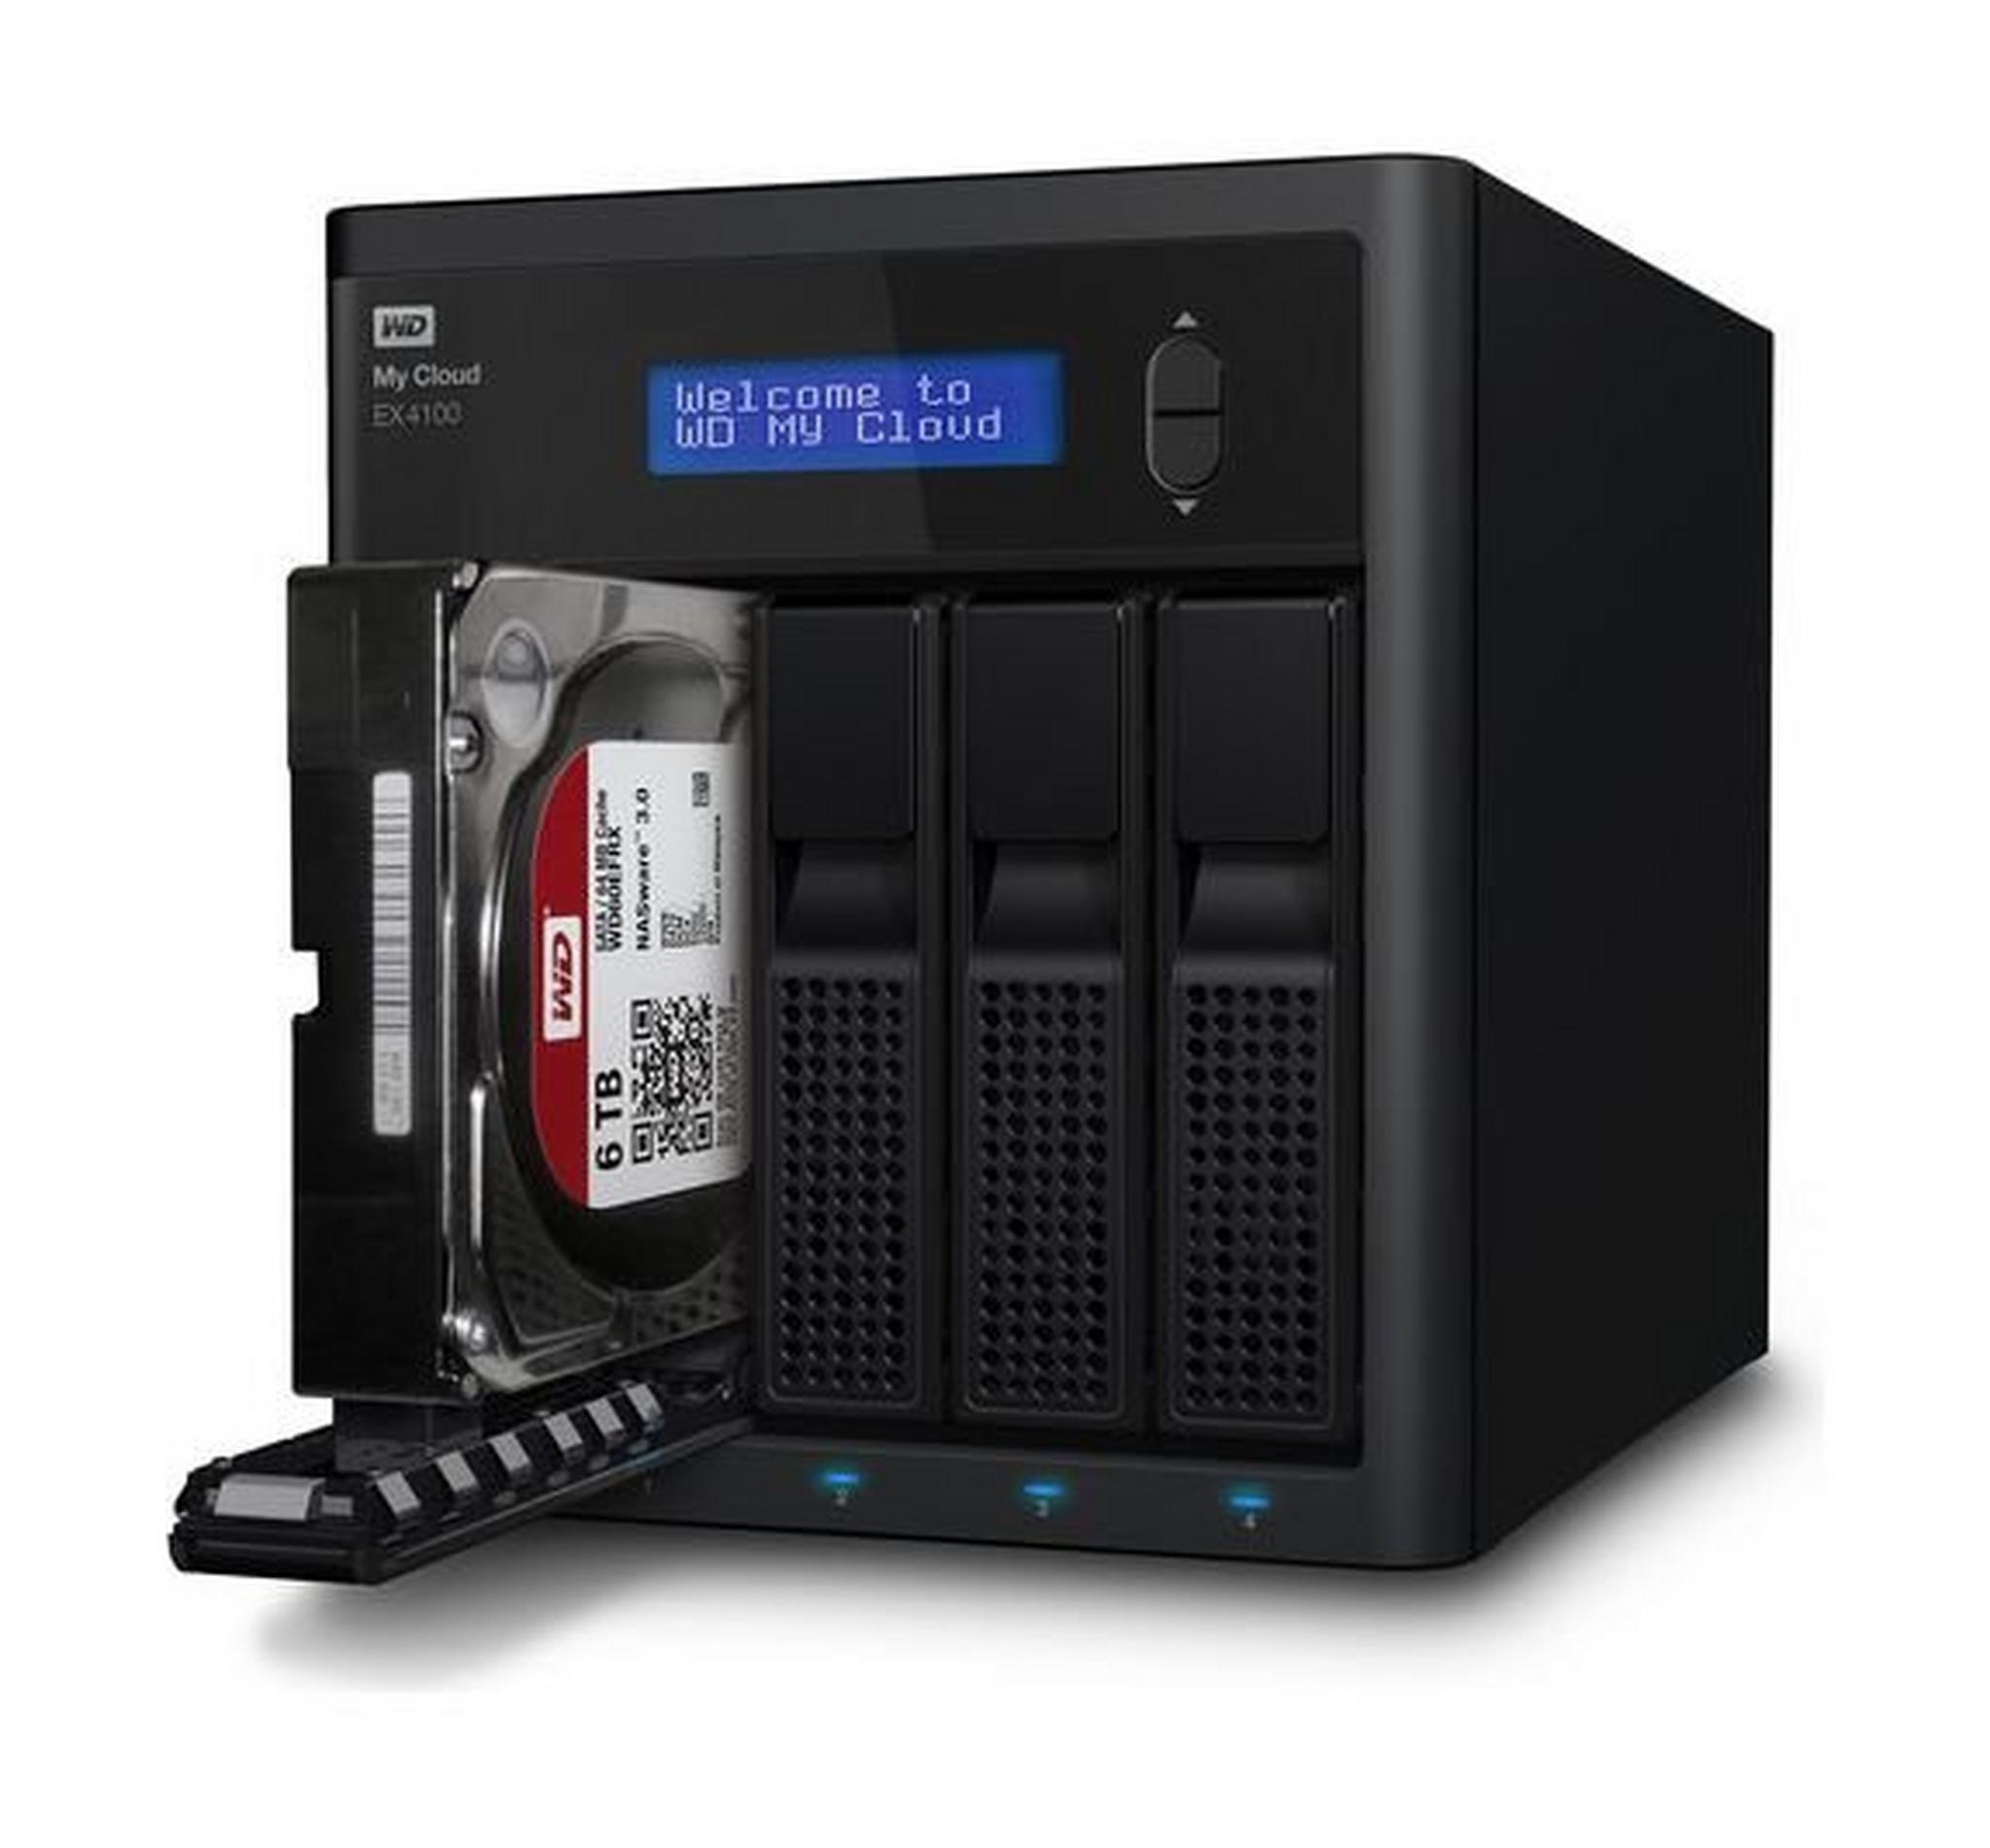 وحدة تخزين للشبكات ماي كلاود إكسبيرت بسعة ١٦ تيرابايت من ويسترن ديجيتال – ٤ منافذ أقراص صلبة ٤ × ٤ تيرابايت  (EX4100)